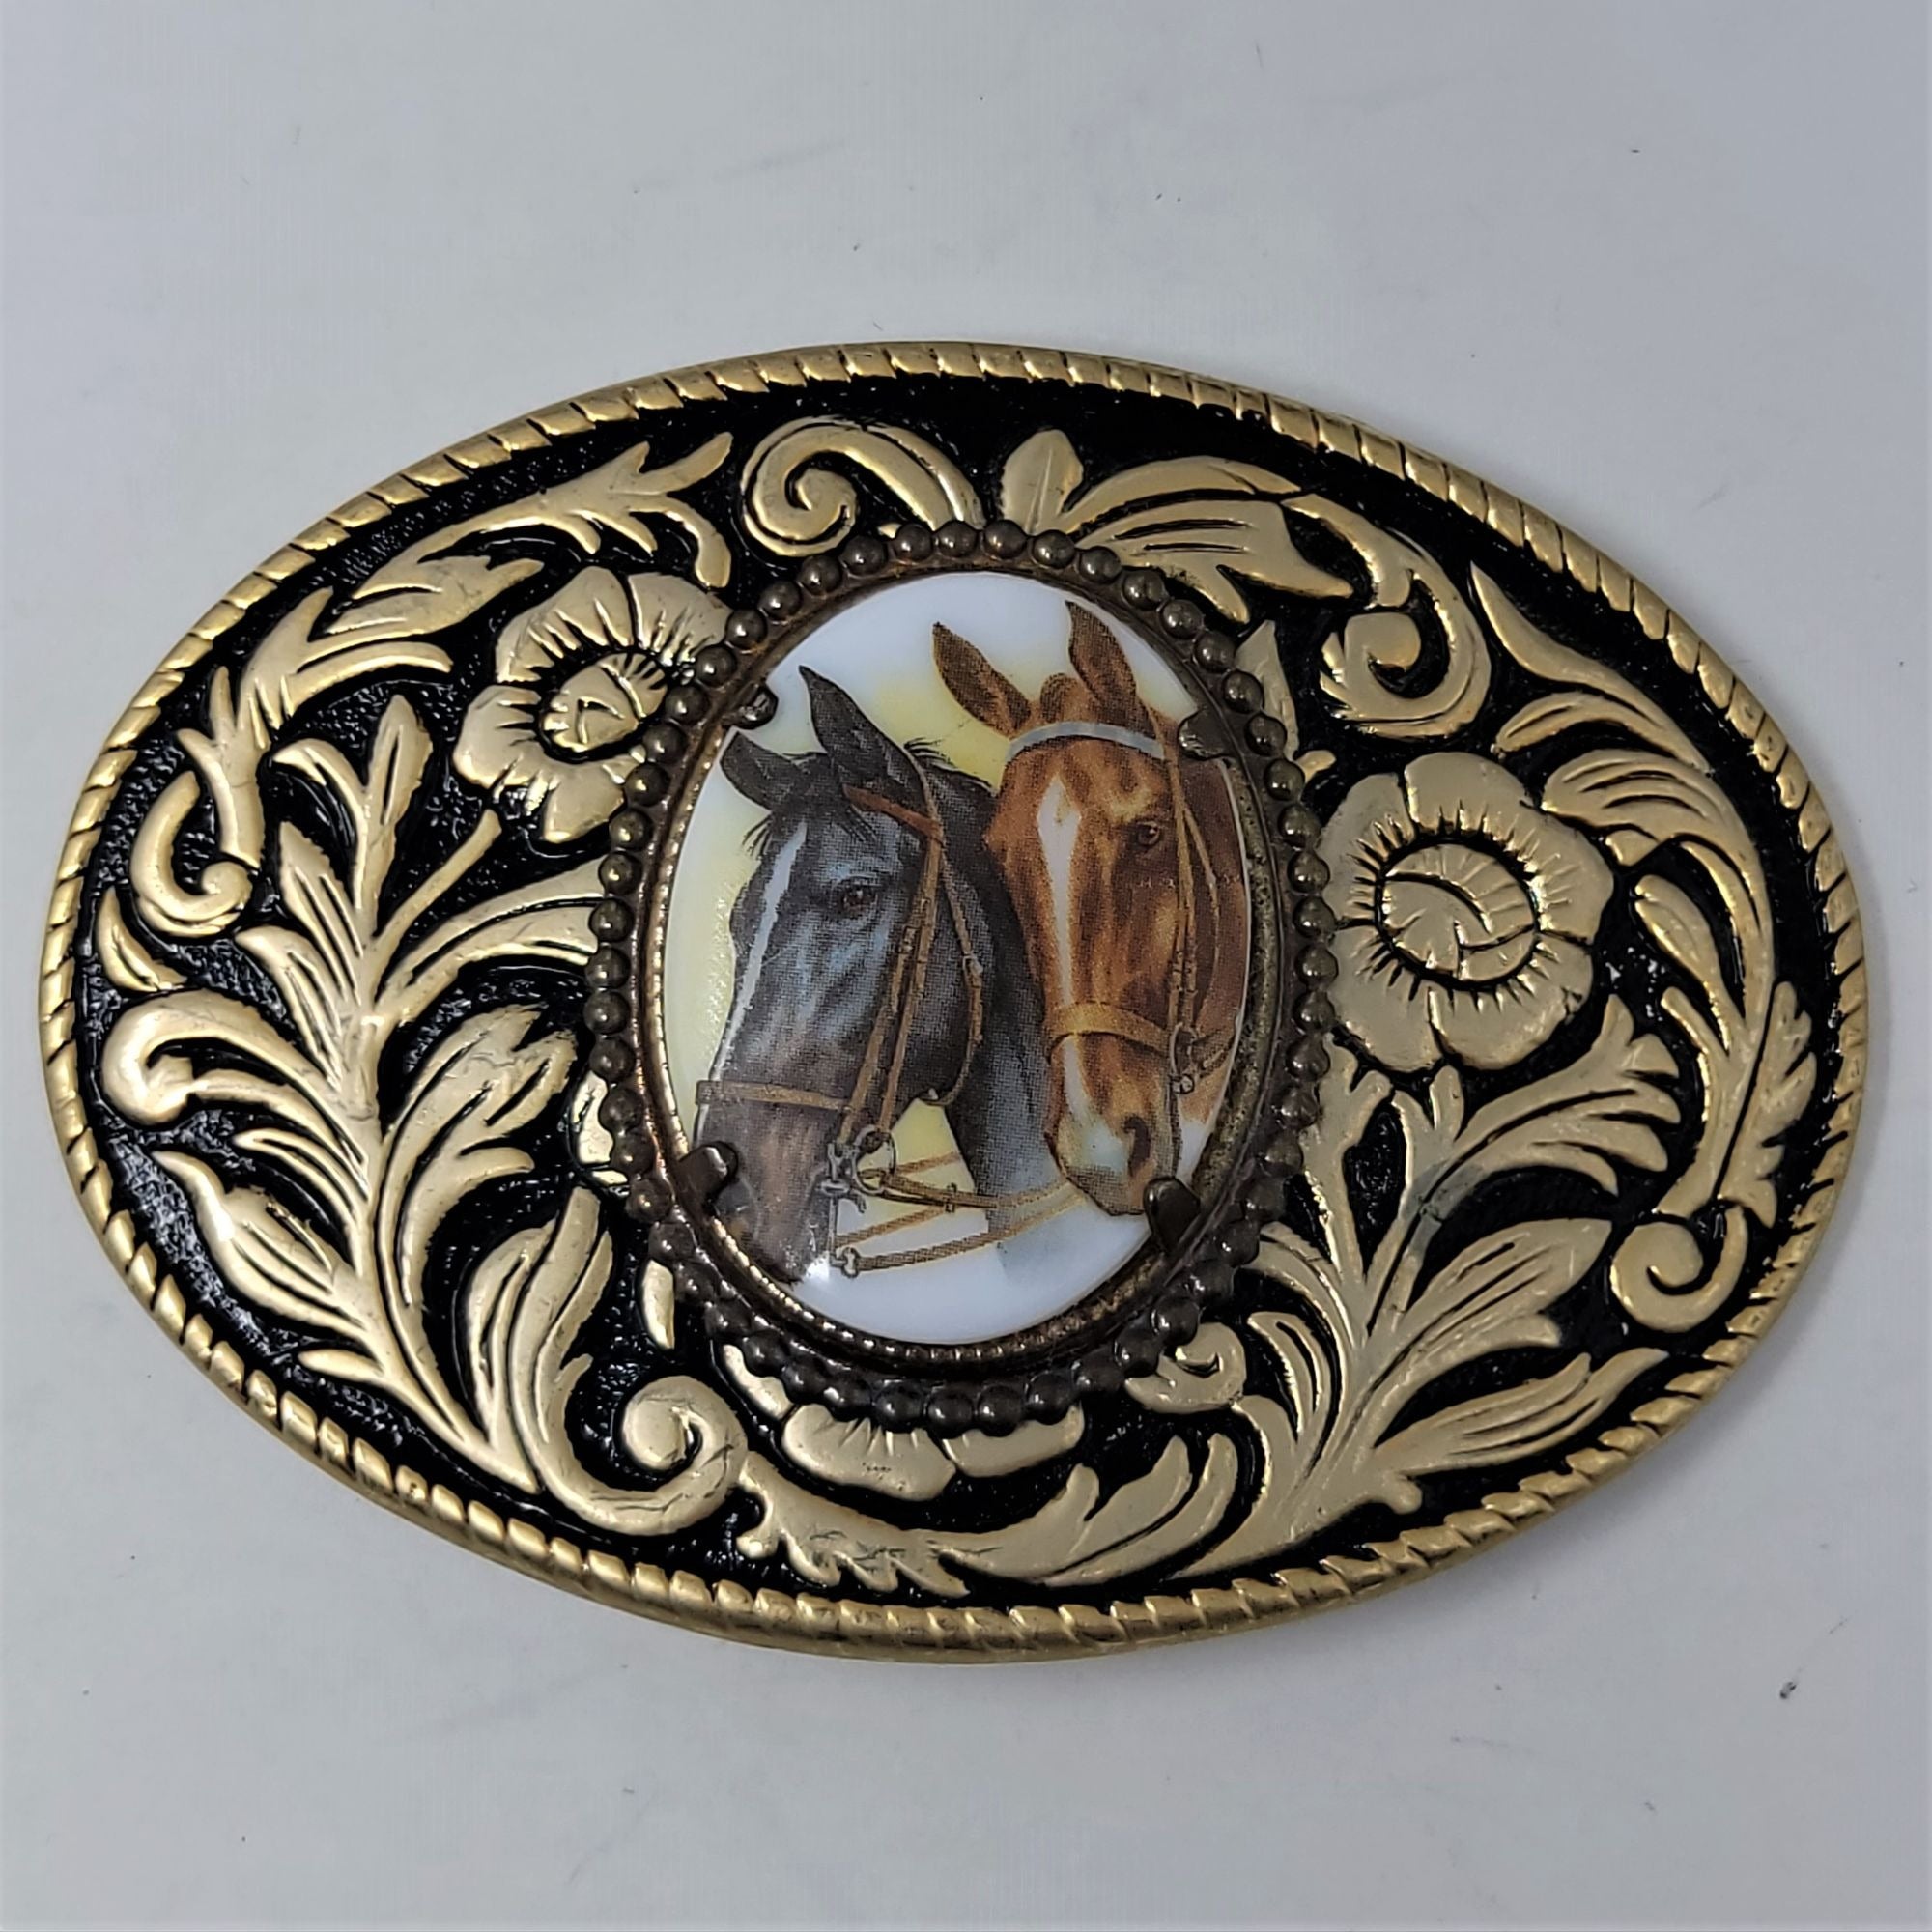 Western Vintage Belt Buckle Porcelain Horse Heads Goldtone